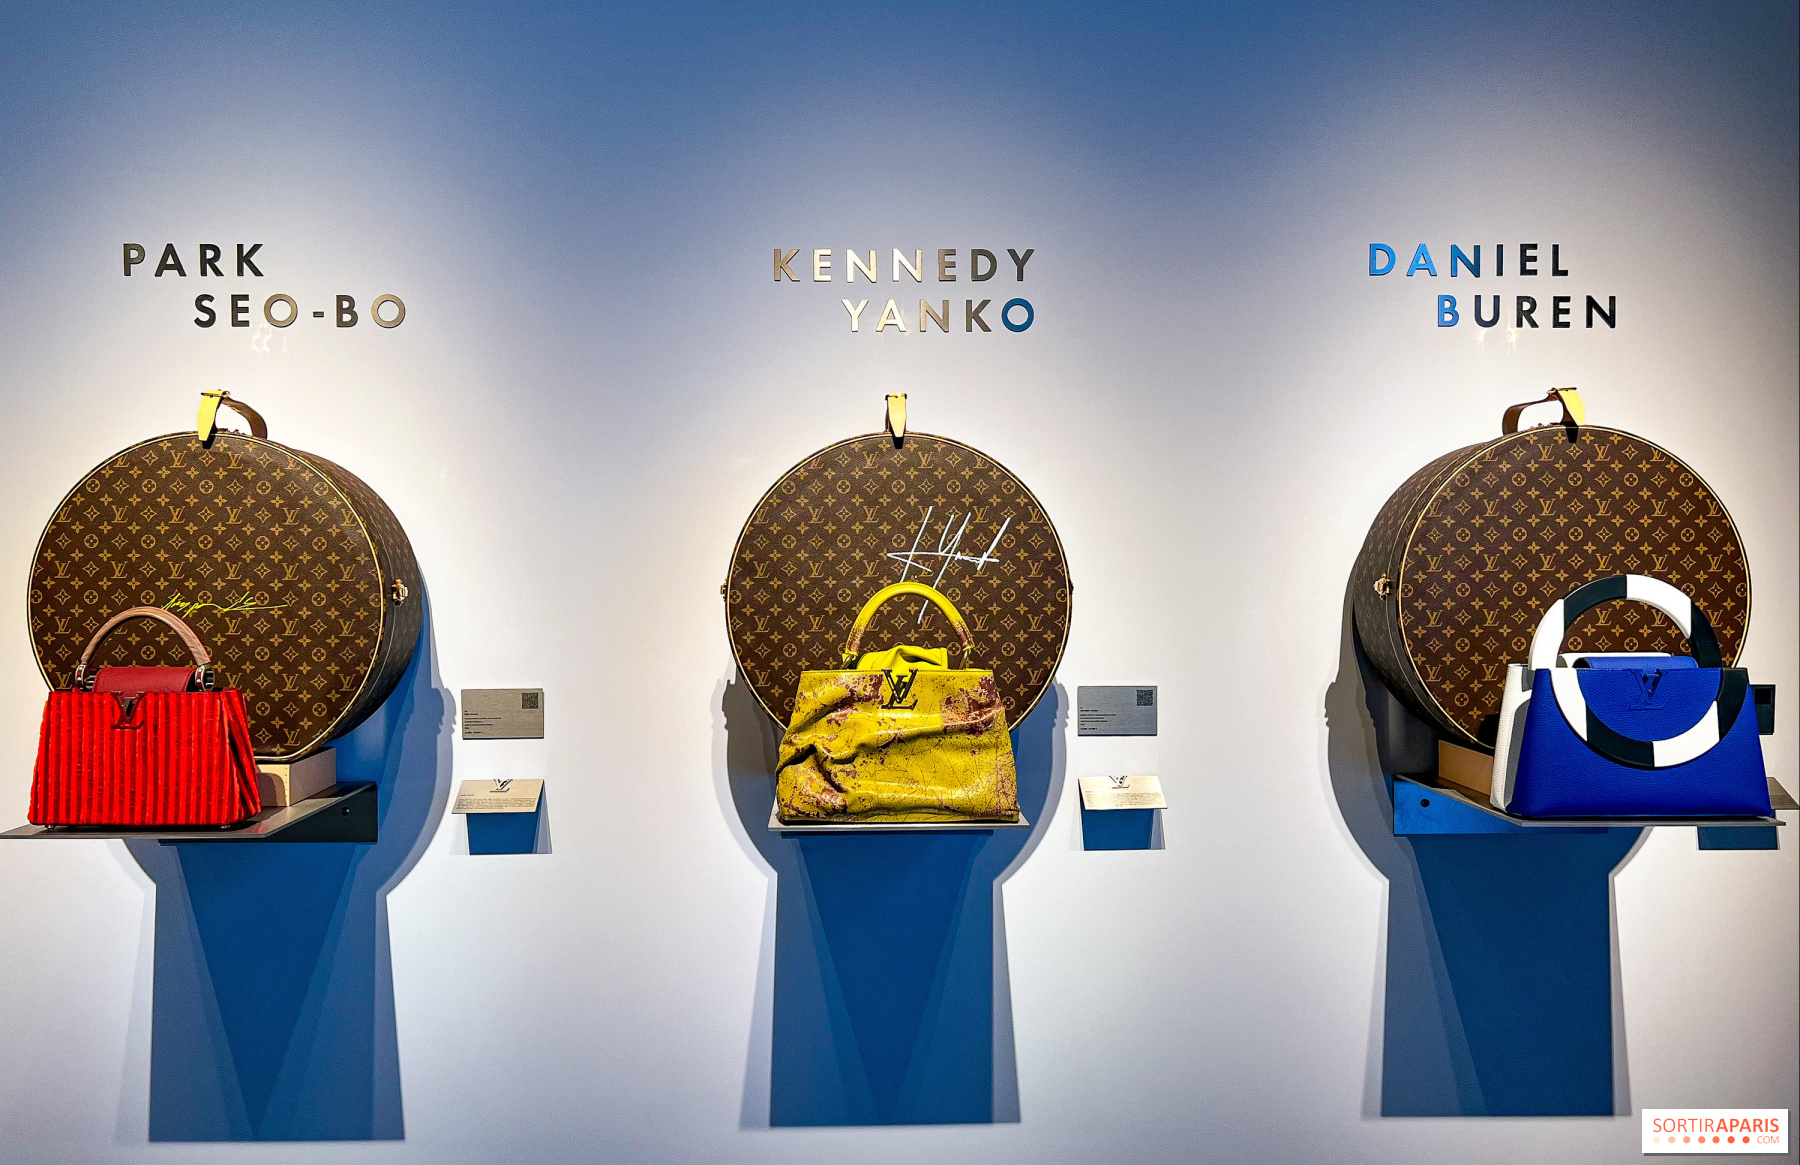 Louis Vuitton celebrates its bountiful art alliances from Miami to Paris